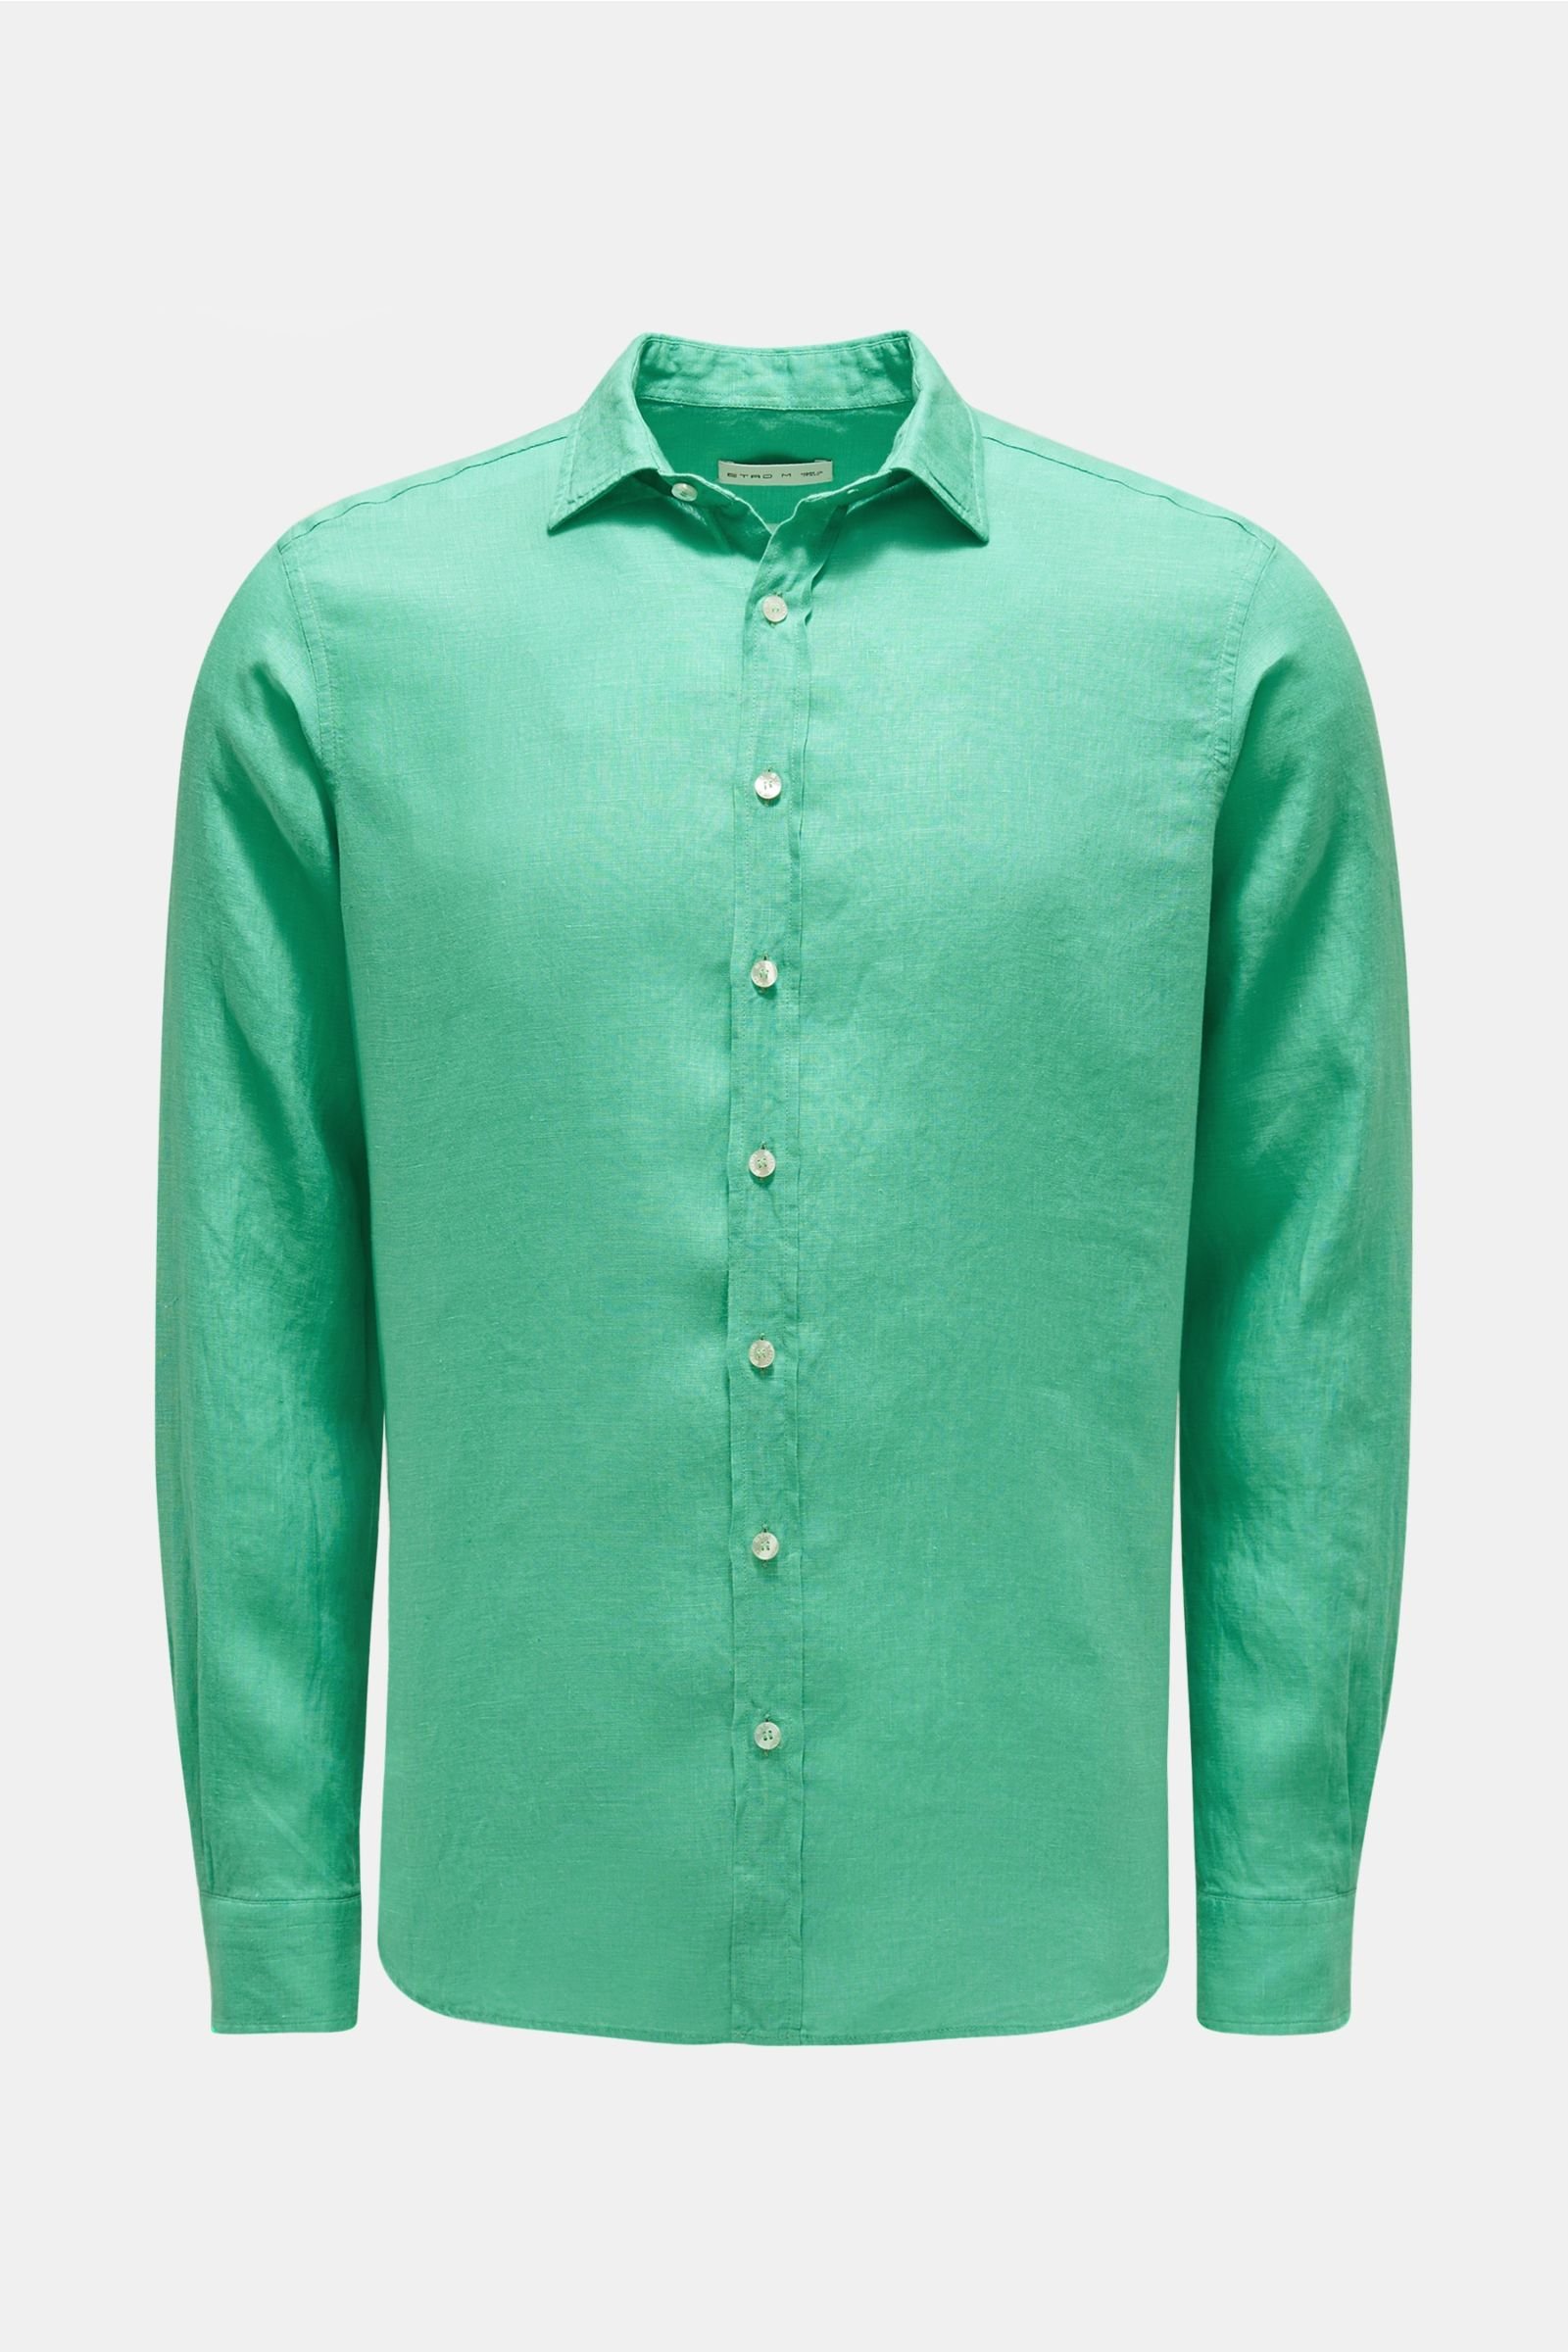 Linen shirt narrow collar mint green